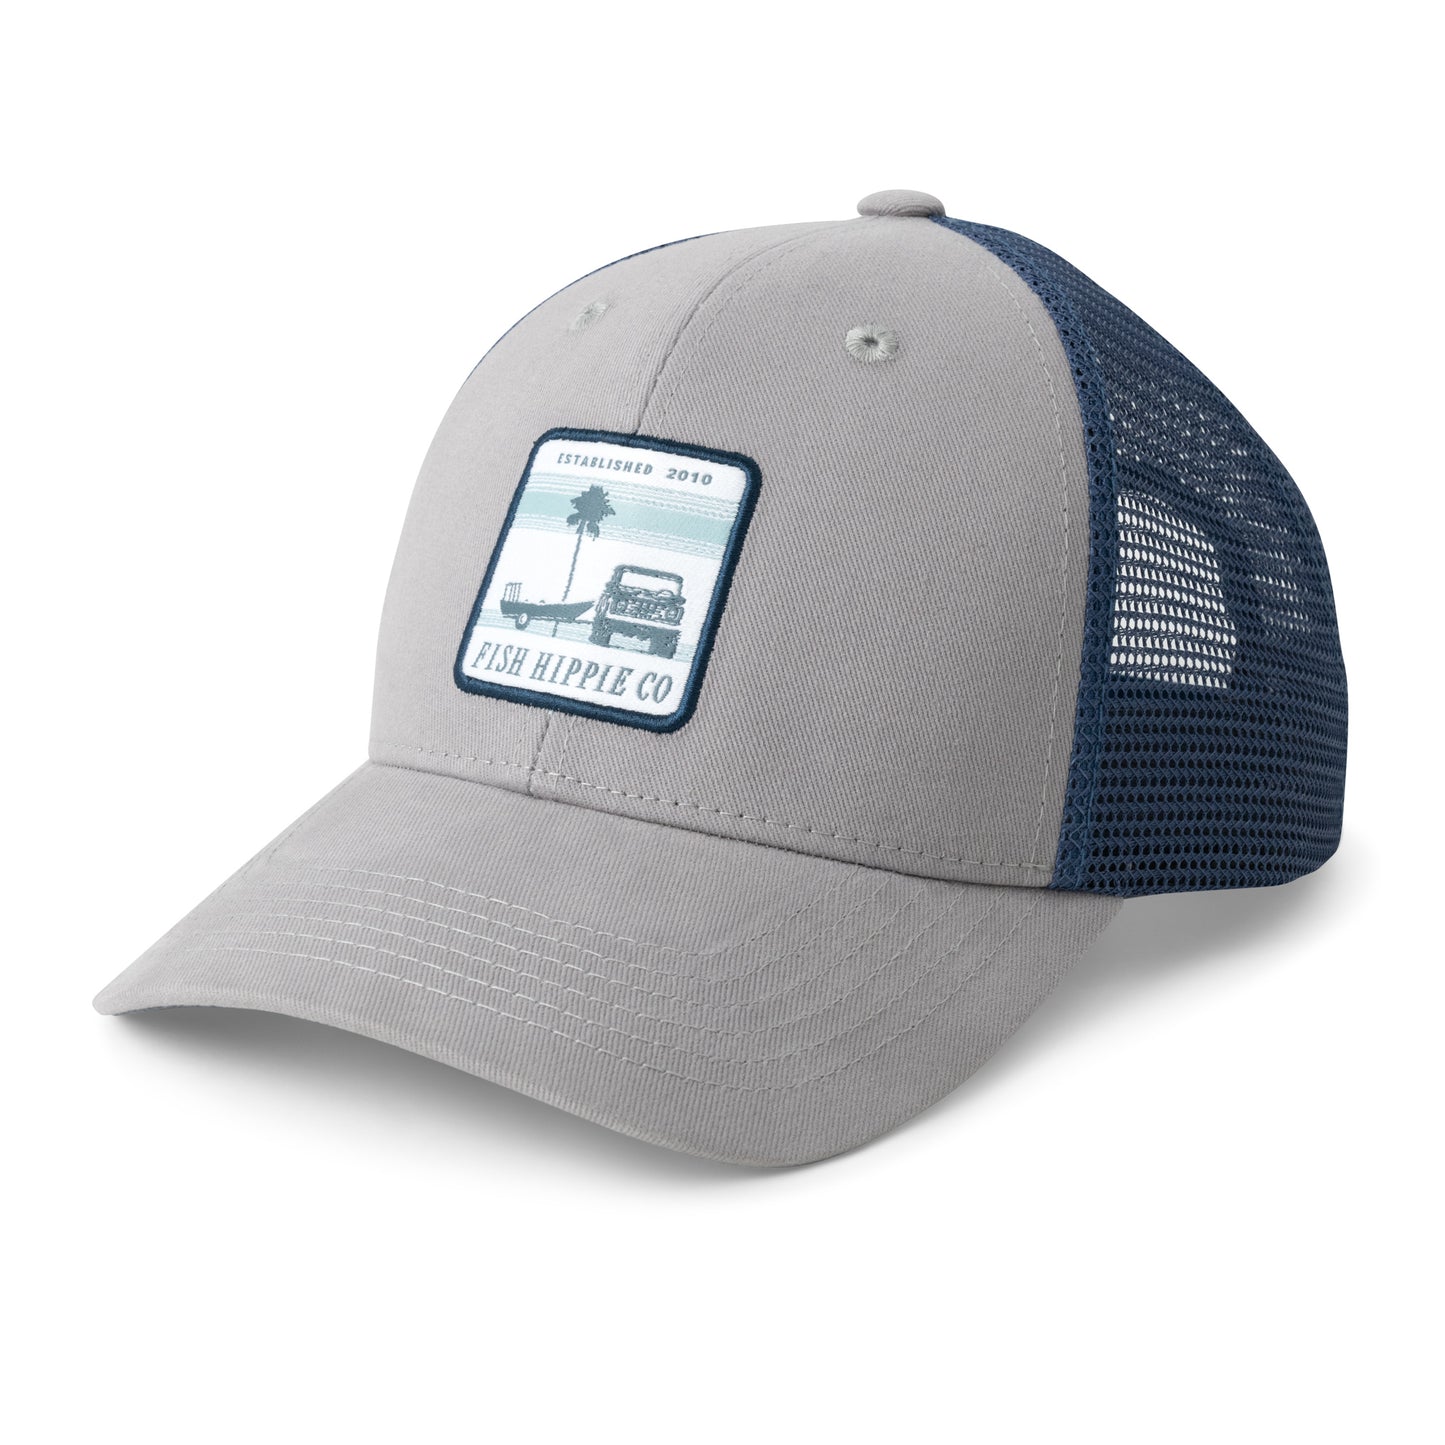 Prompt Trucker Hat – Fish Hippie